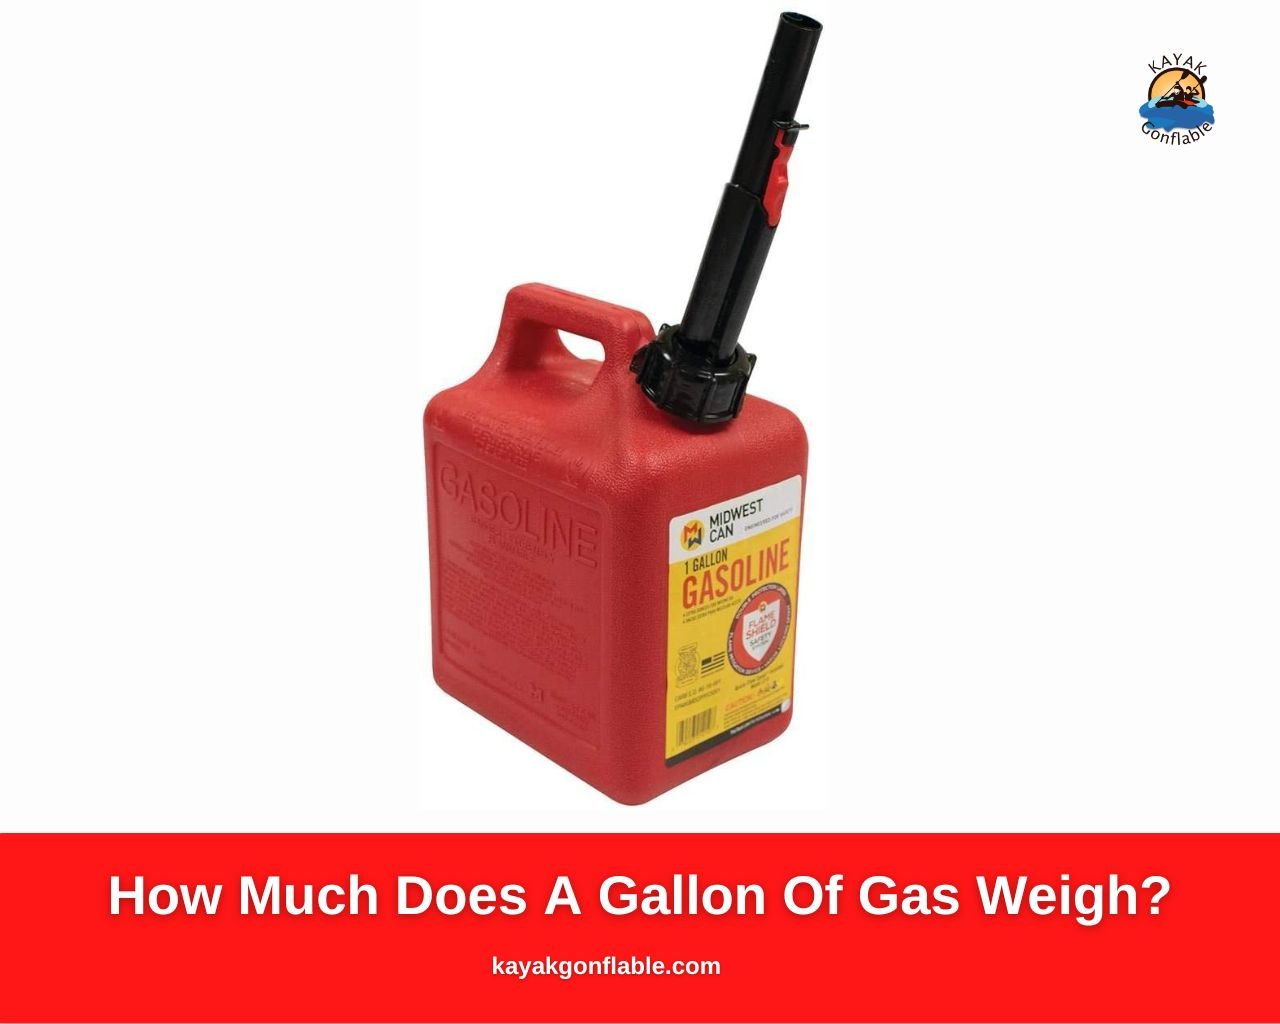 Quanto pesa un gallone di gas